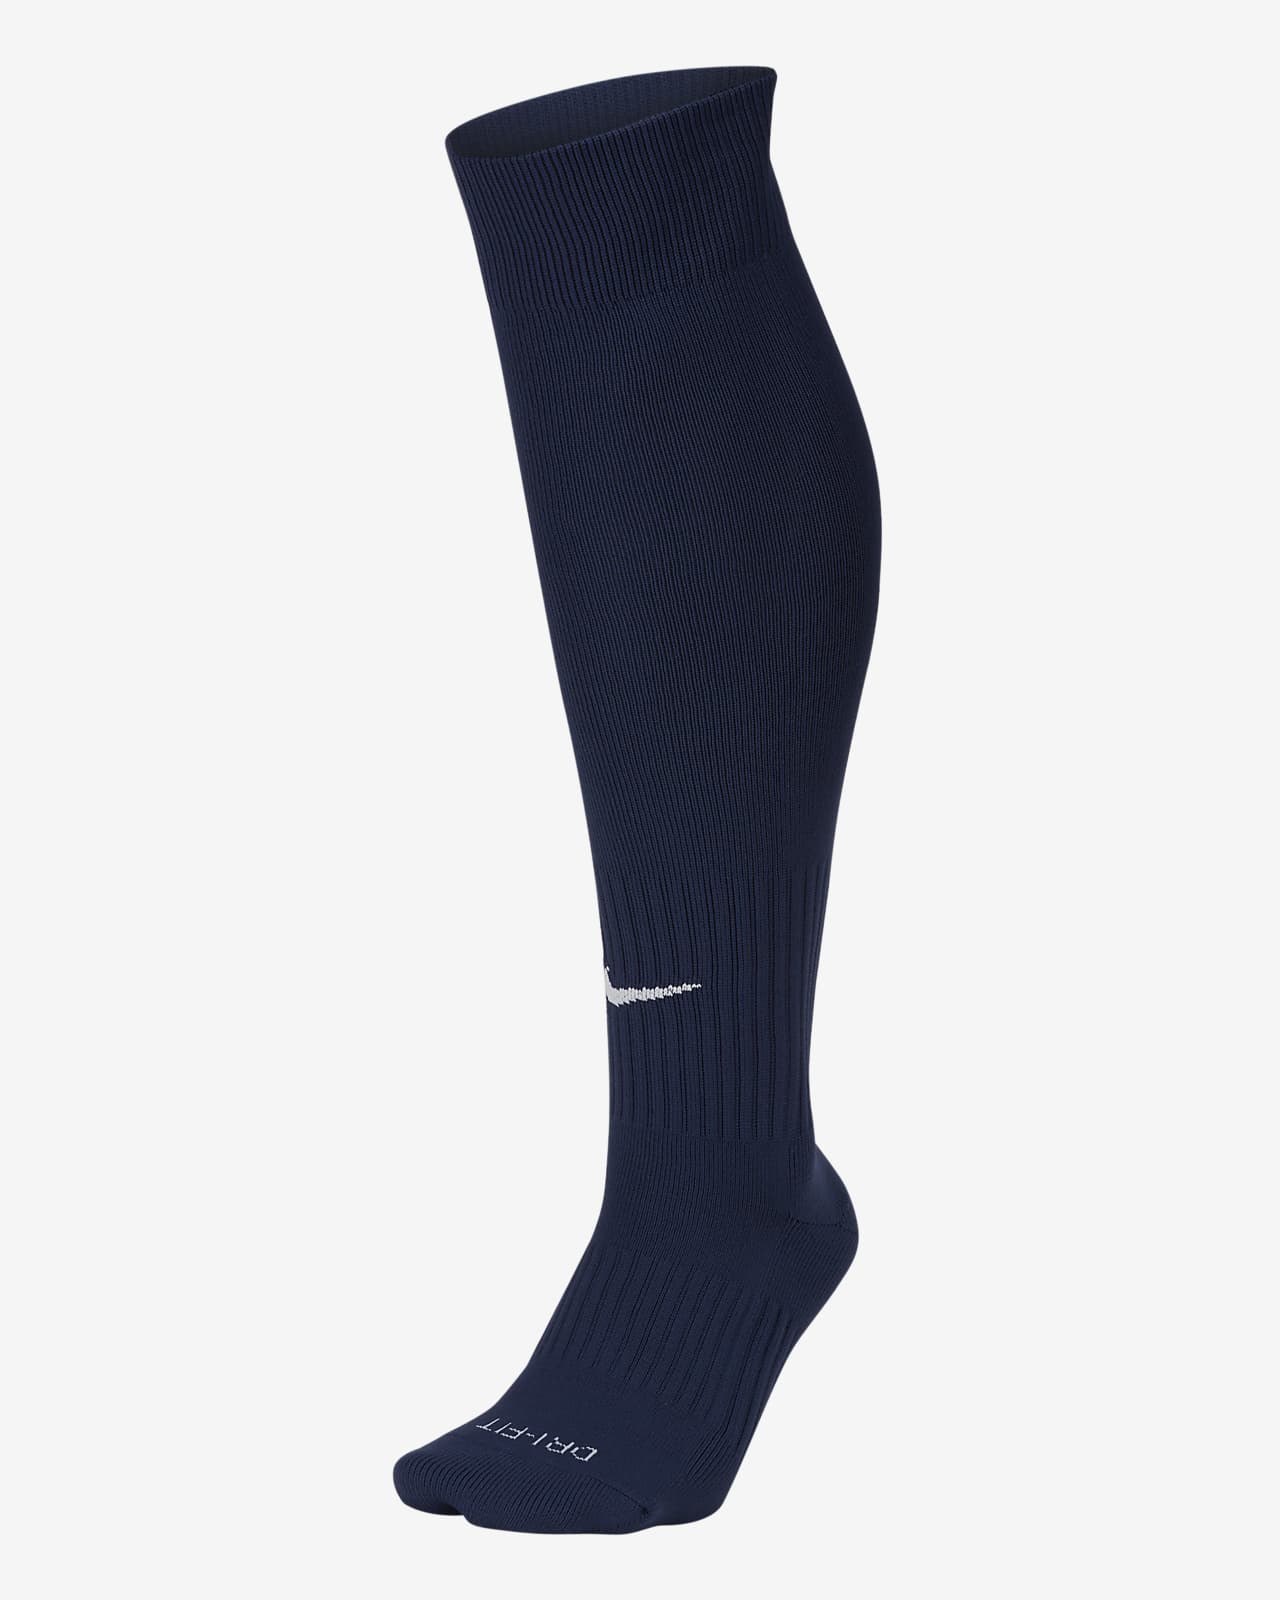 Nike Classic 2 Cushioned Over-the-Calf Socks